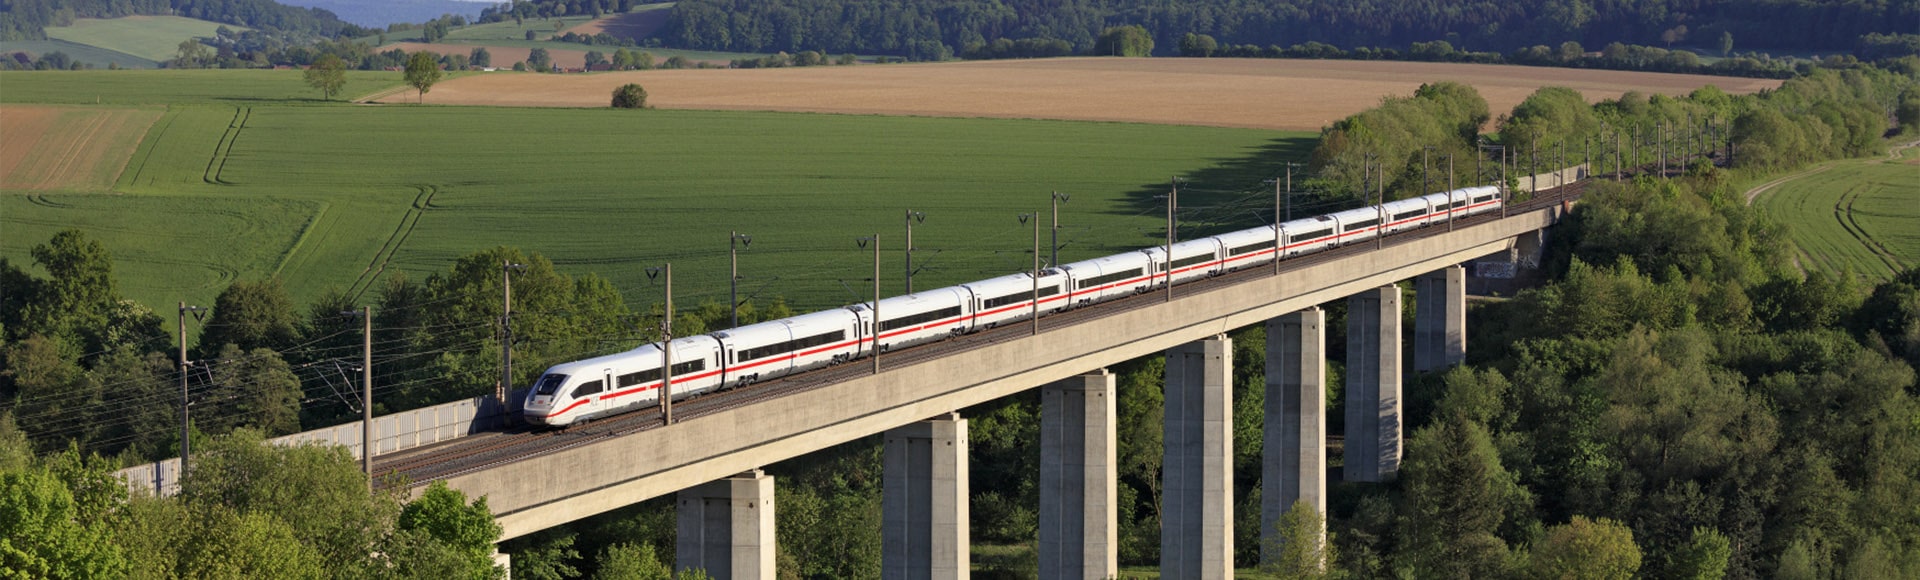 Rotas de Trem na Europa